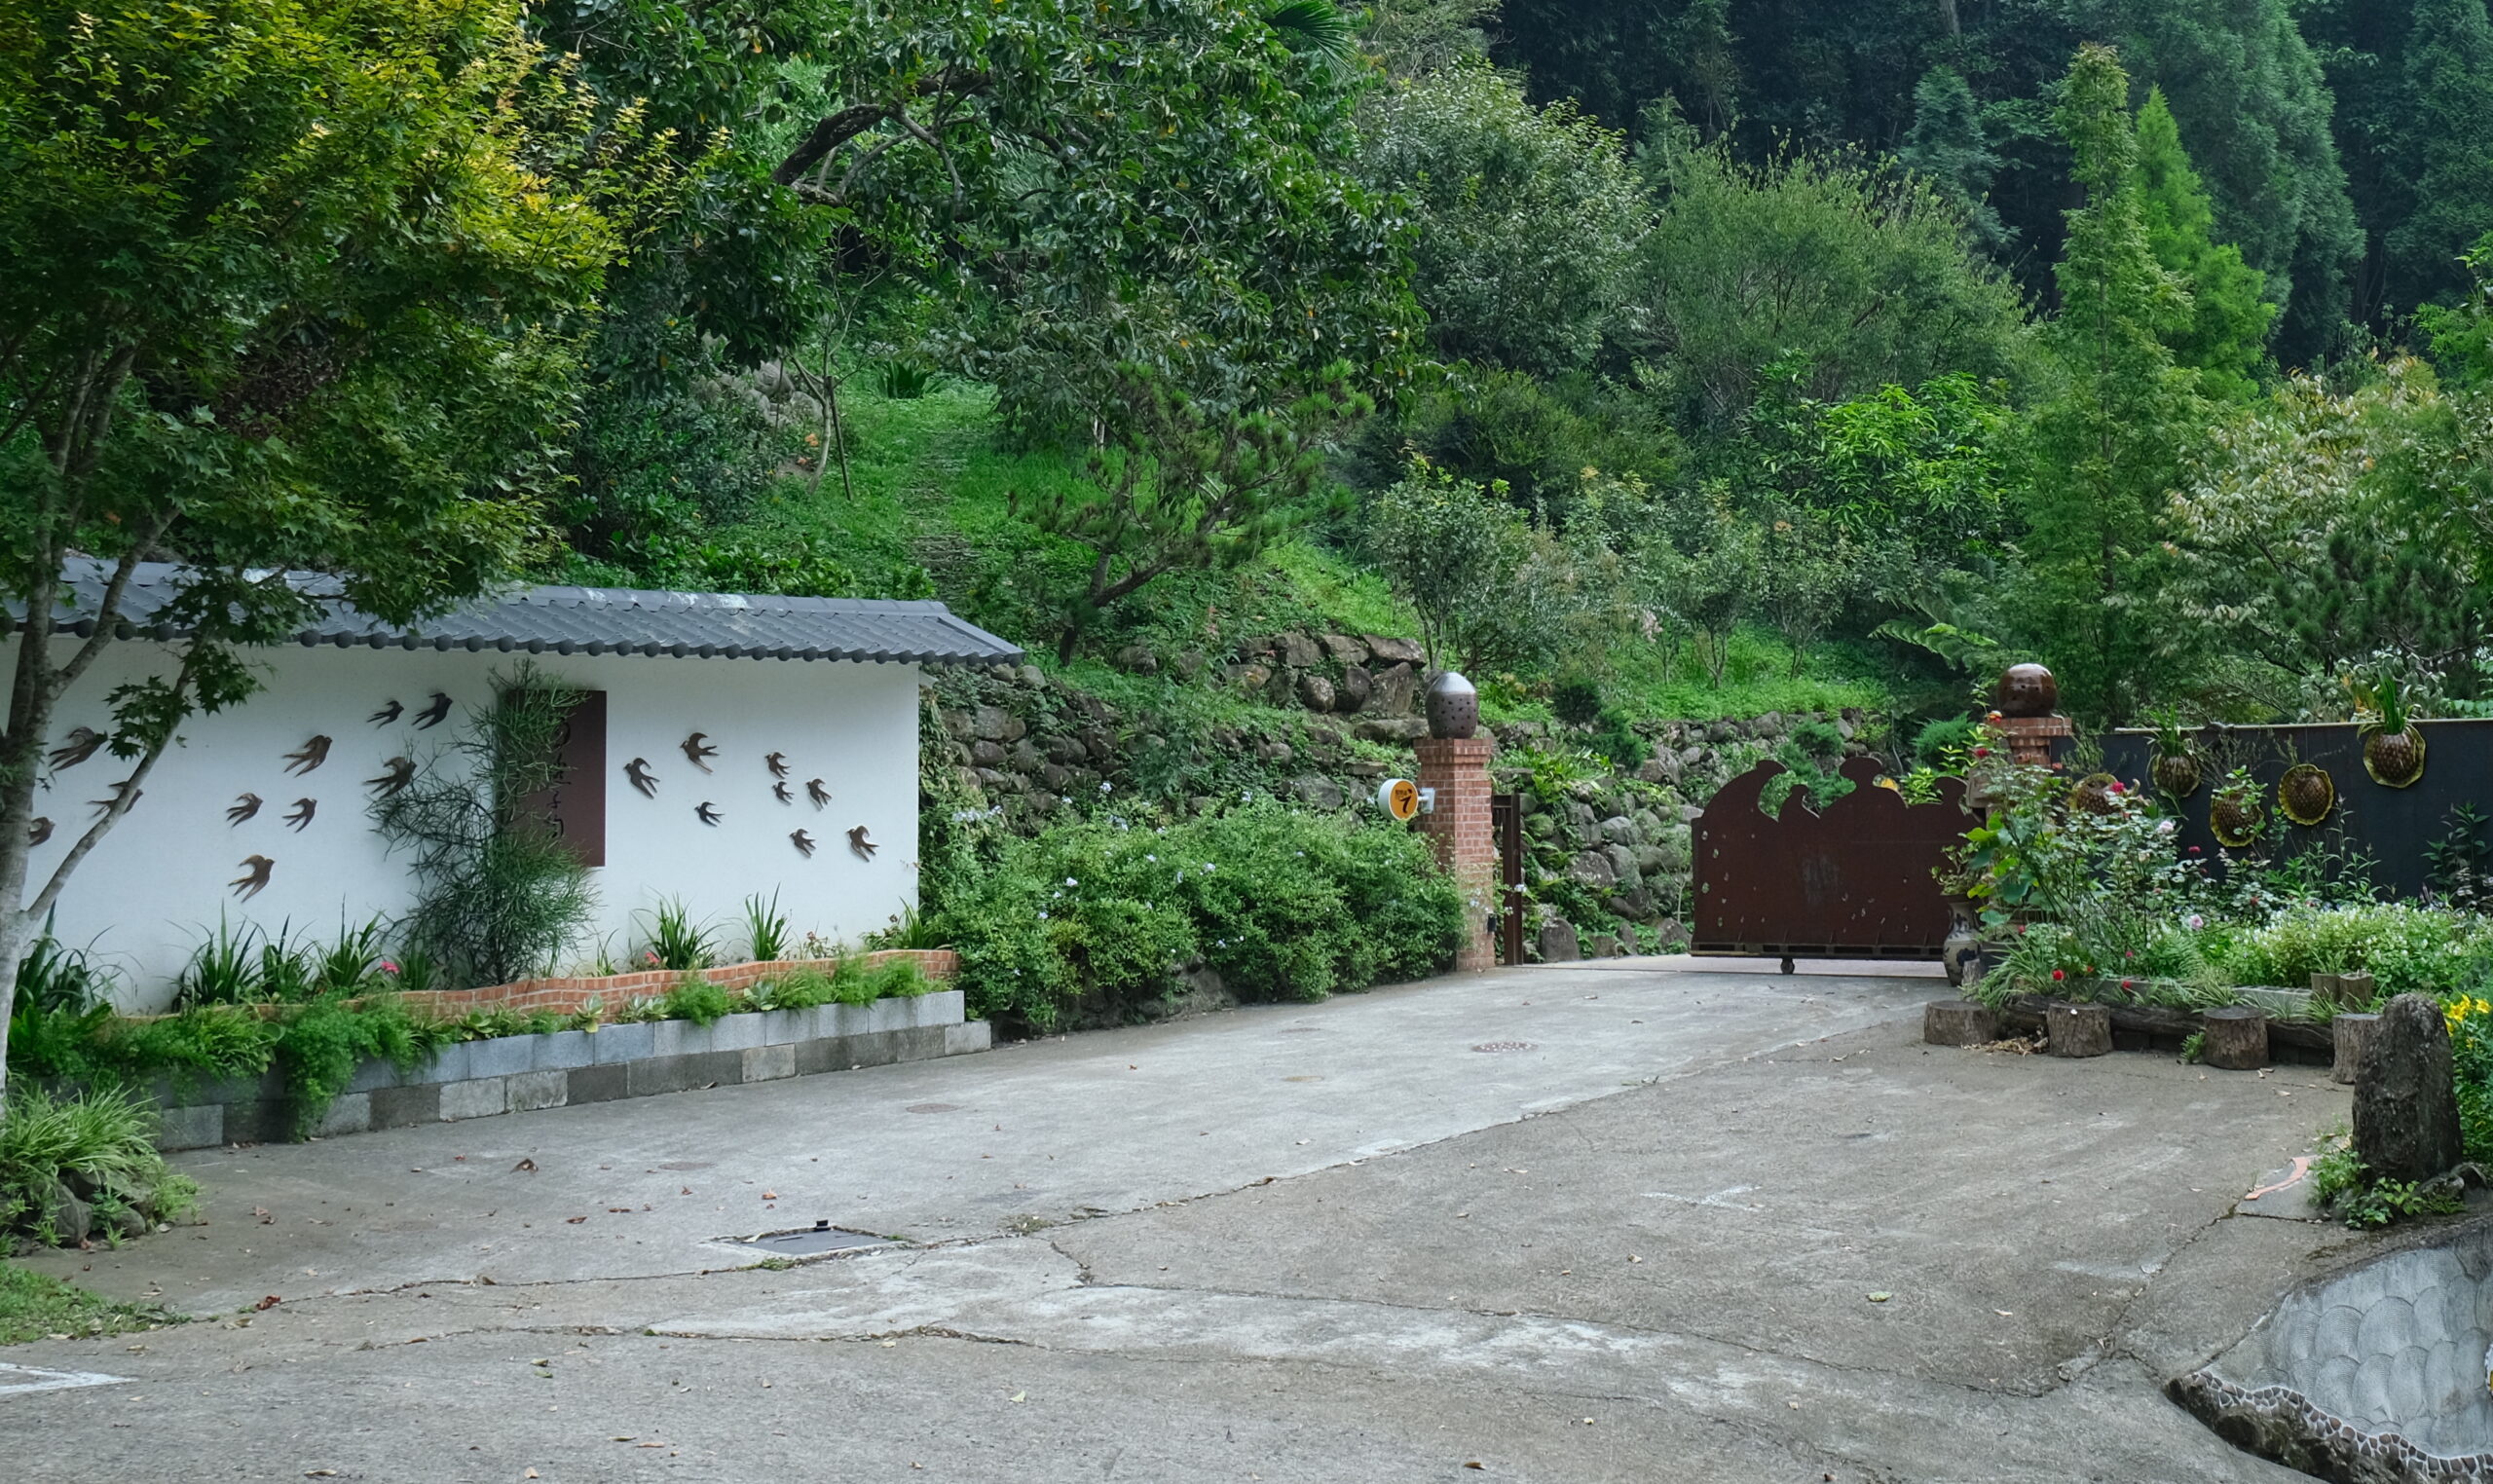 燕子陶陶藝民宿入口可以看到燕子造型陶藝迎接遊客到來。